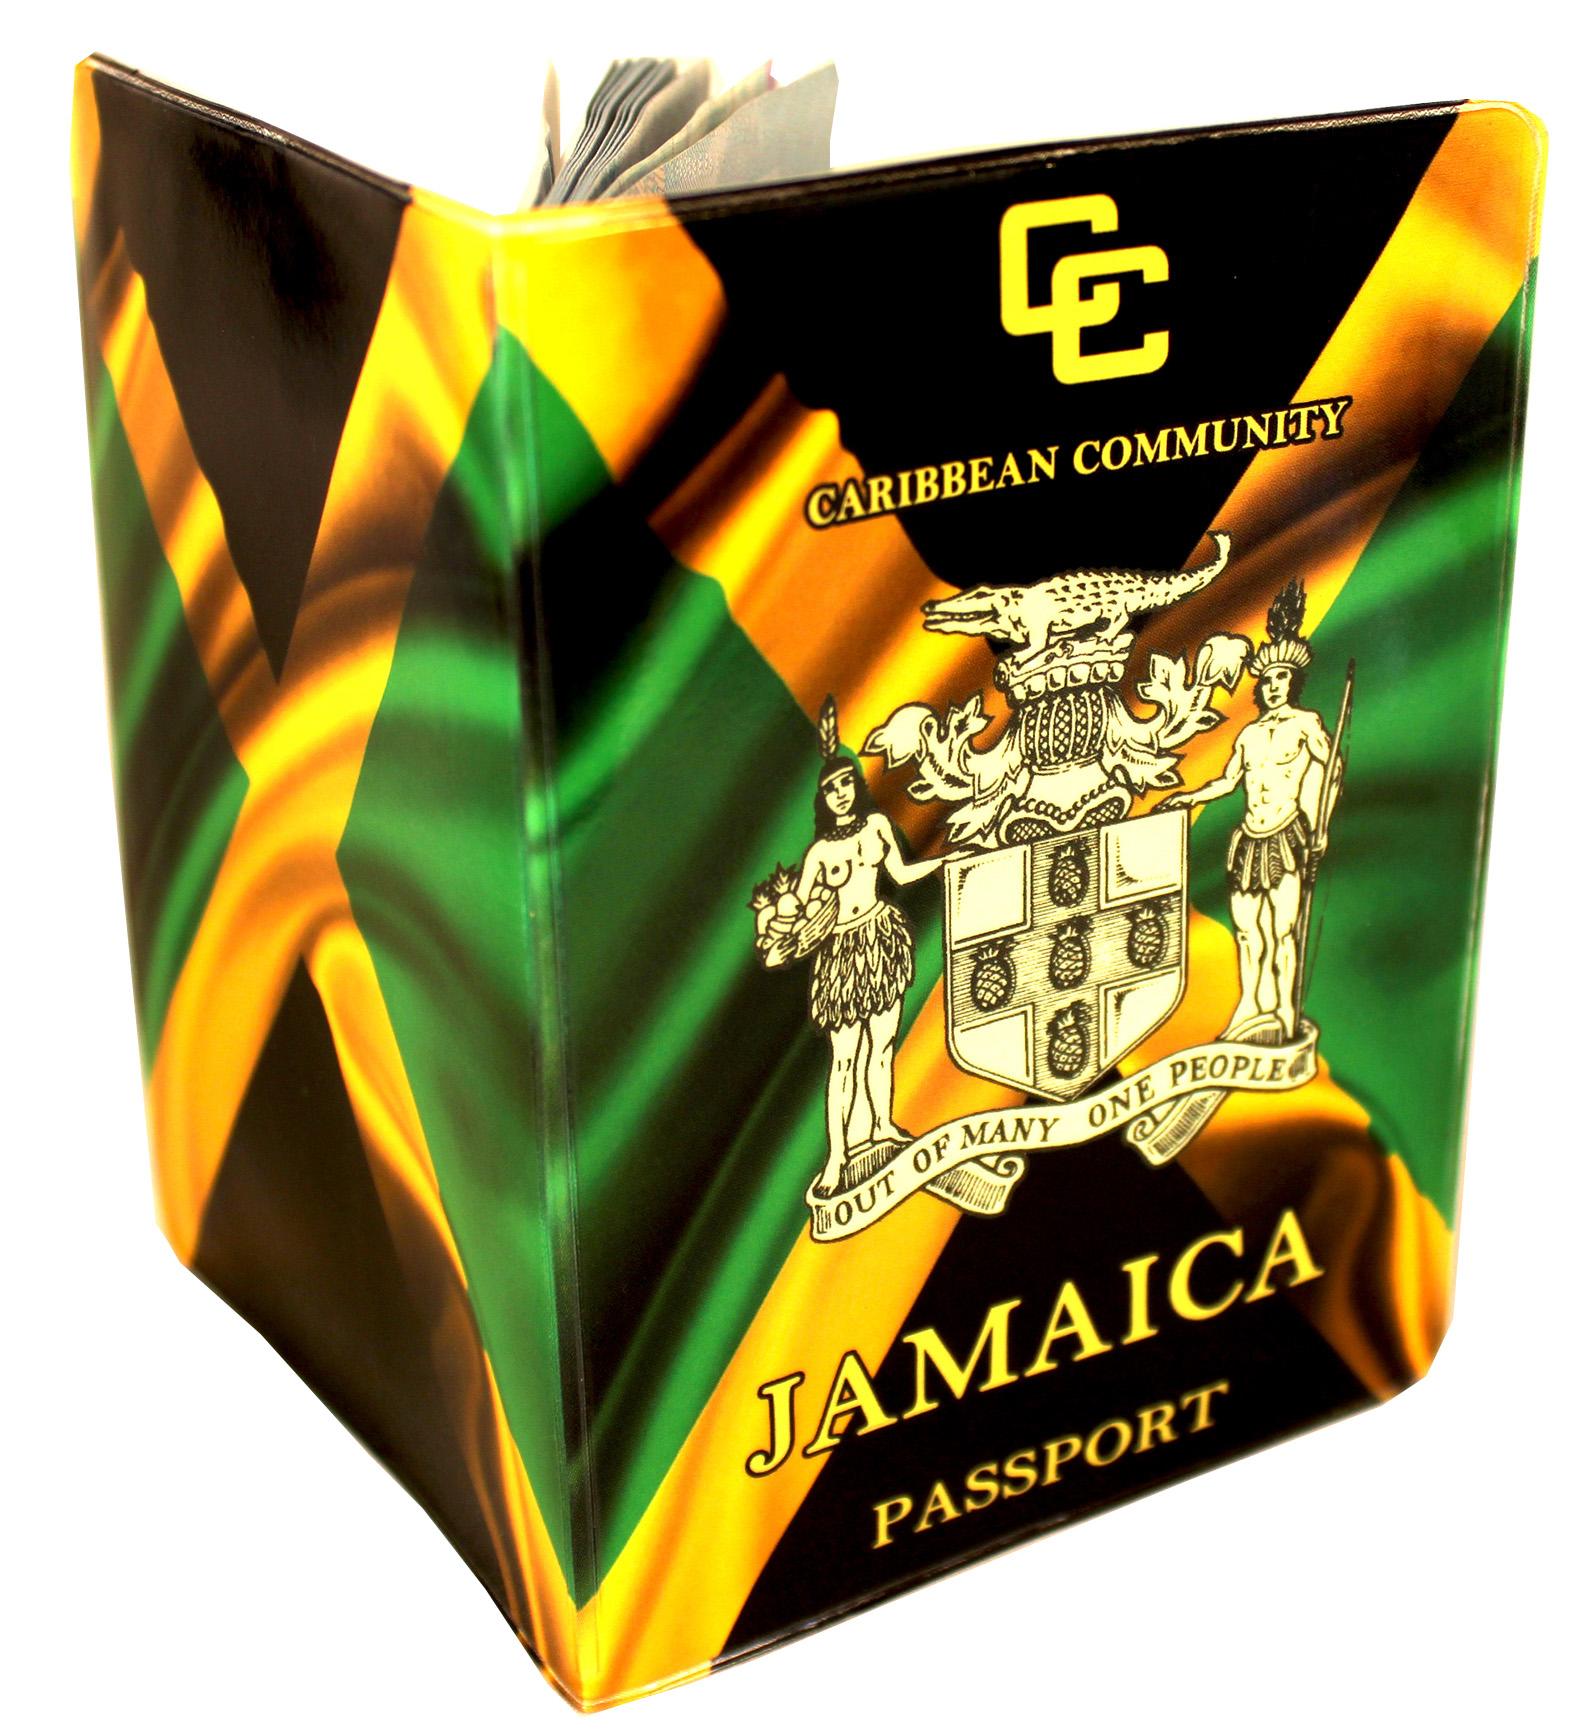 Jamaica Passport Cover